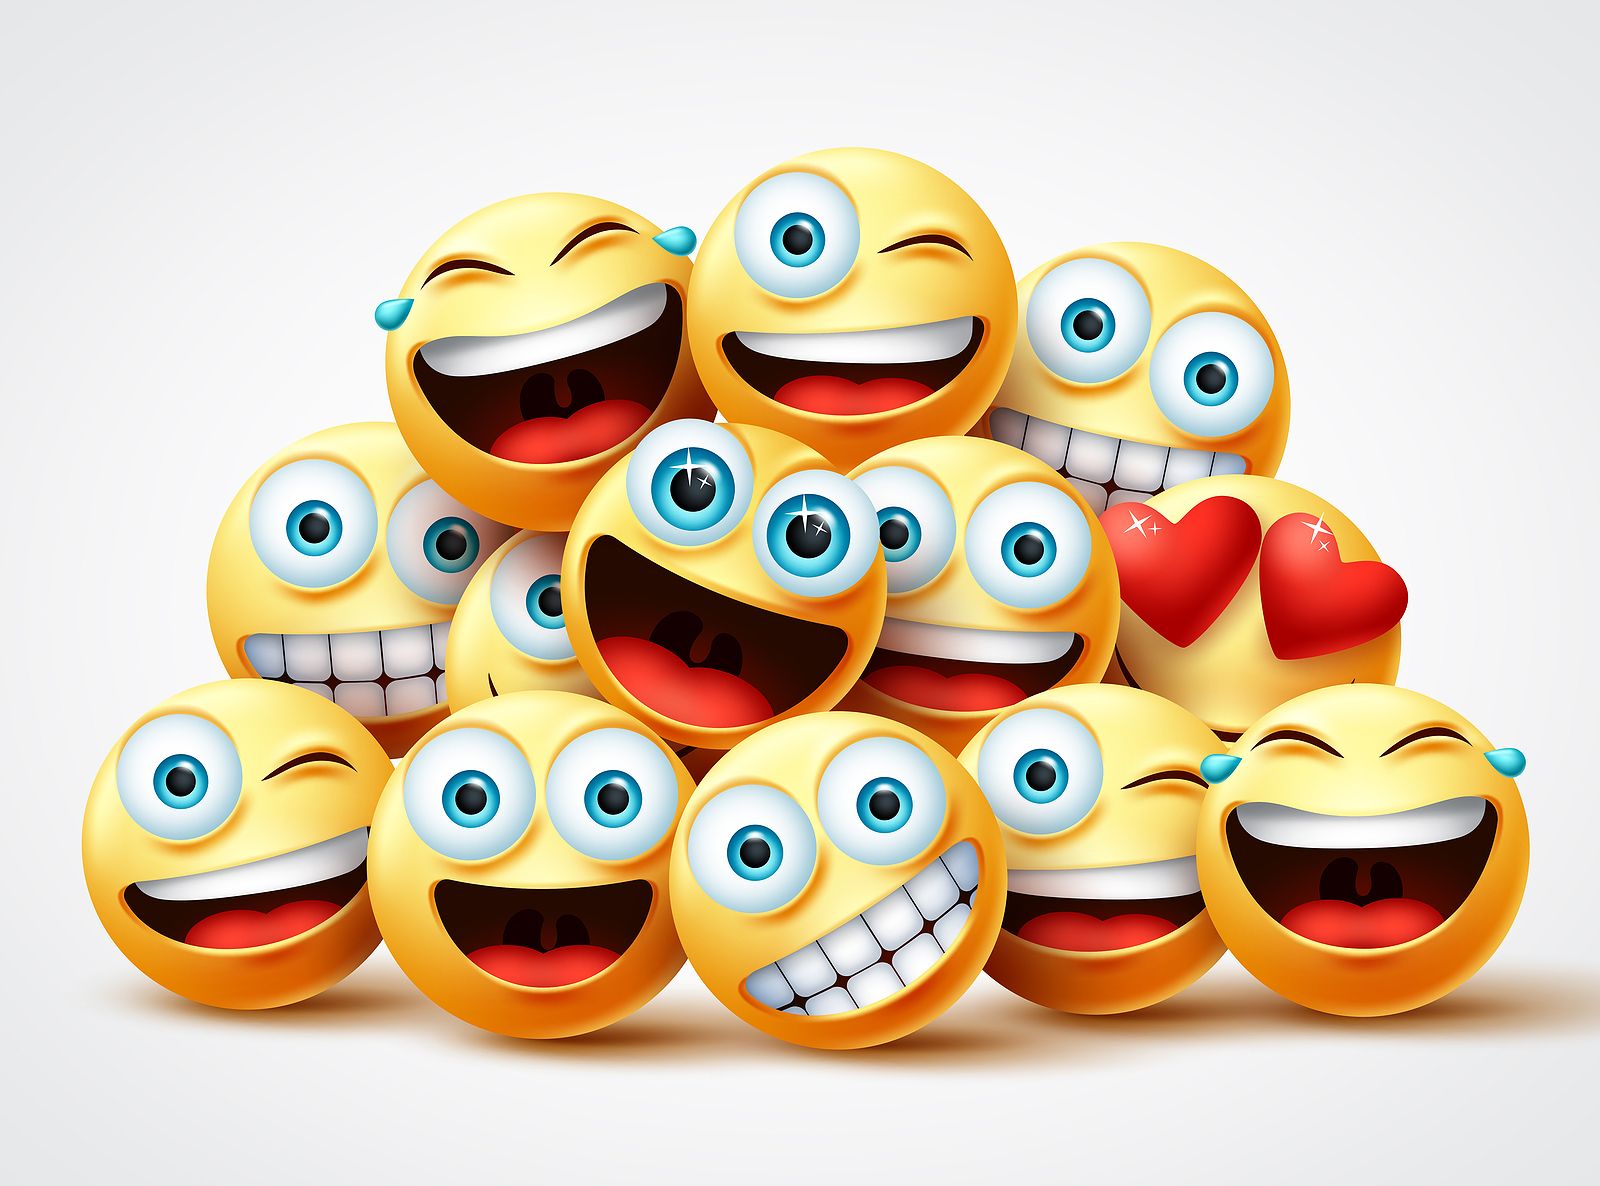 Los sénior, los reyes de los emojis: sus conversaciones "son una fiesta constante" de emoticonos